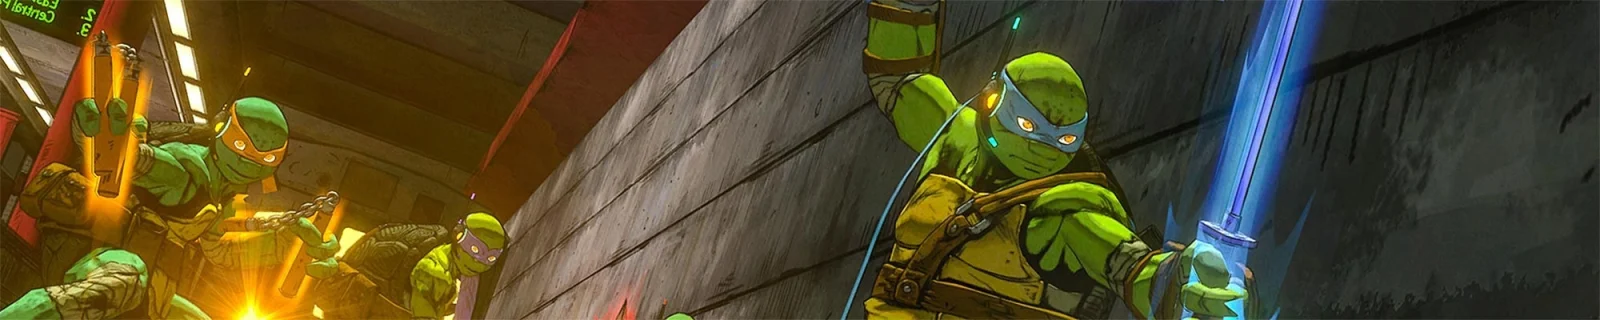 白金《忍者神龟》Leonardo最新演示视频